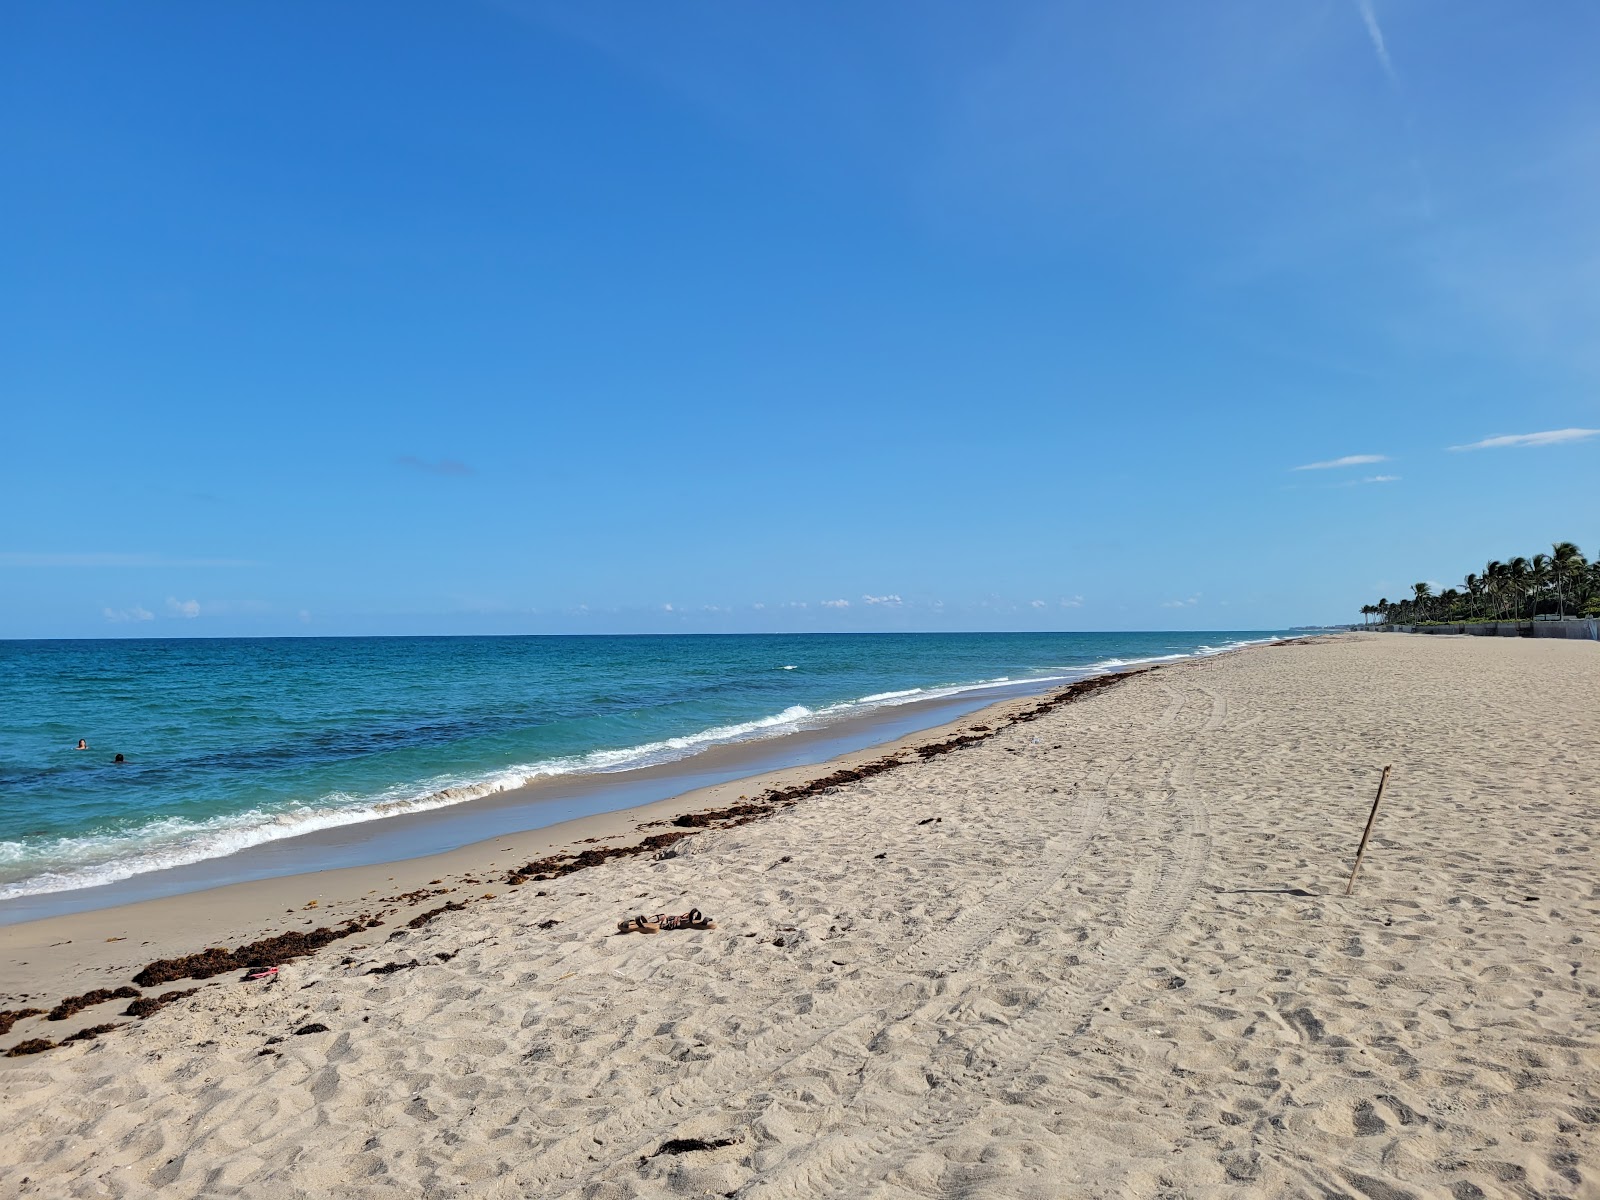 Palm Island beach'in fotoğrafı parlak kum yüzey ile